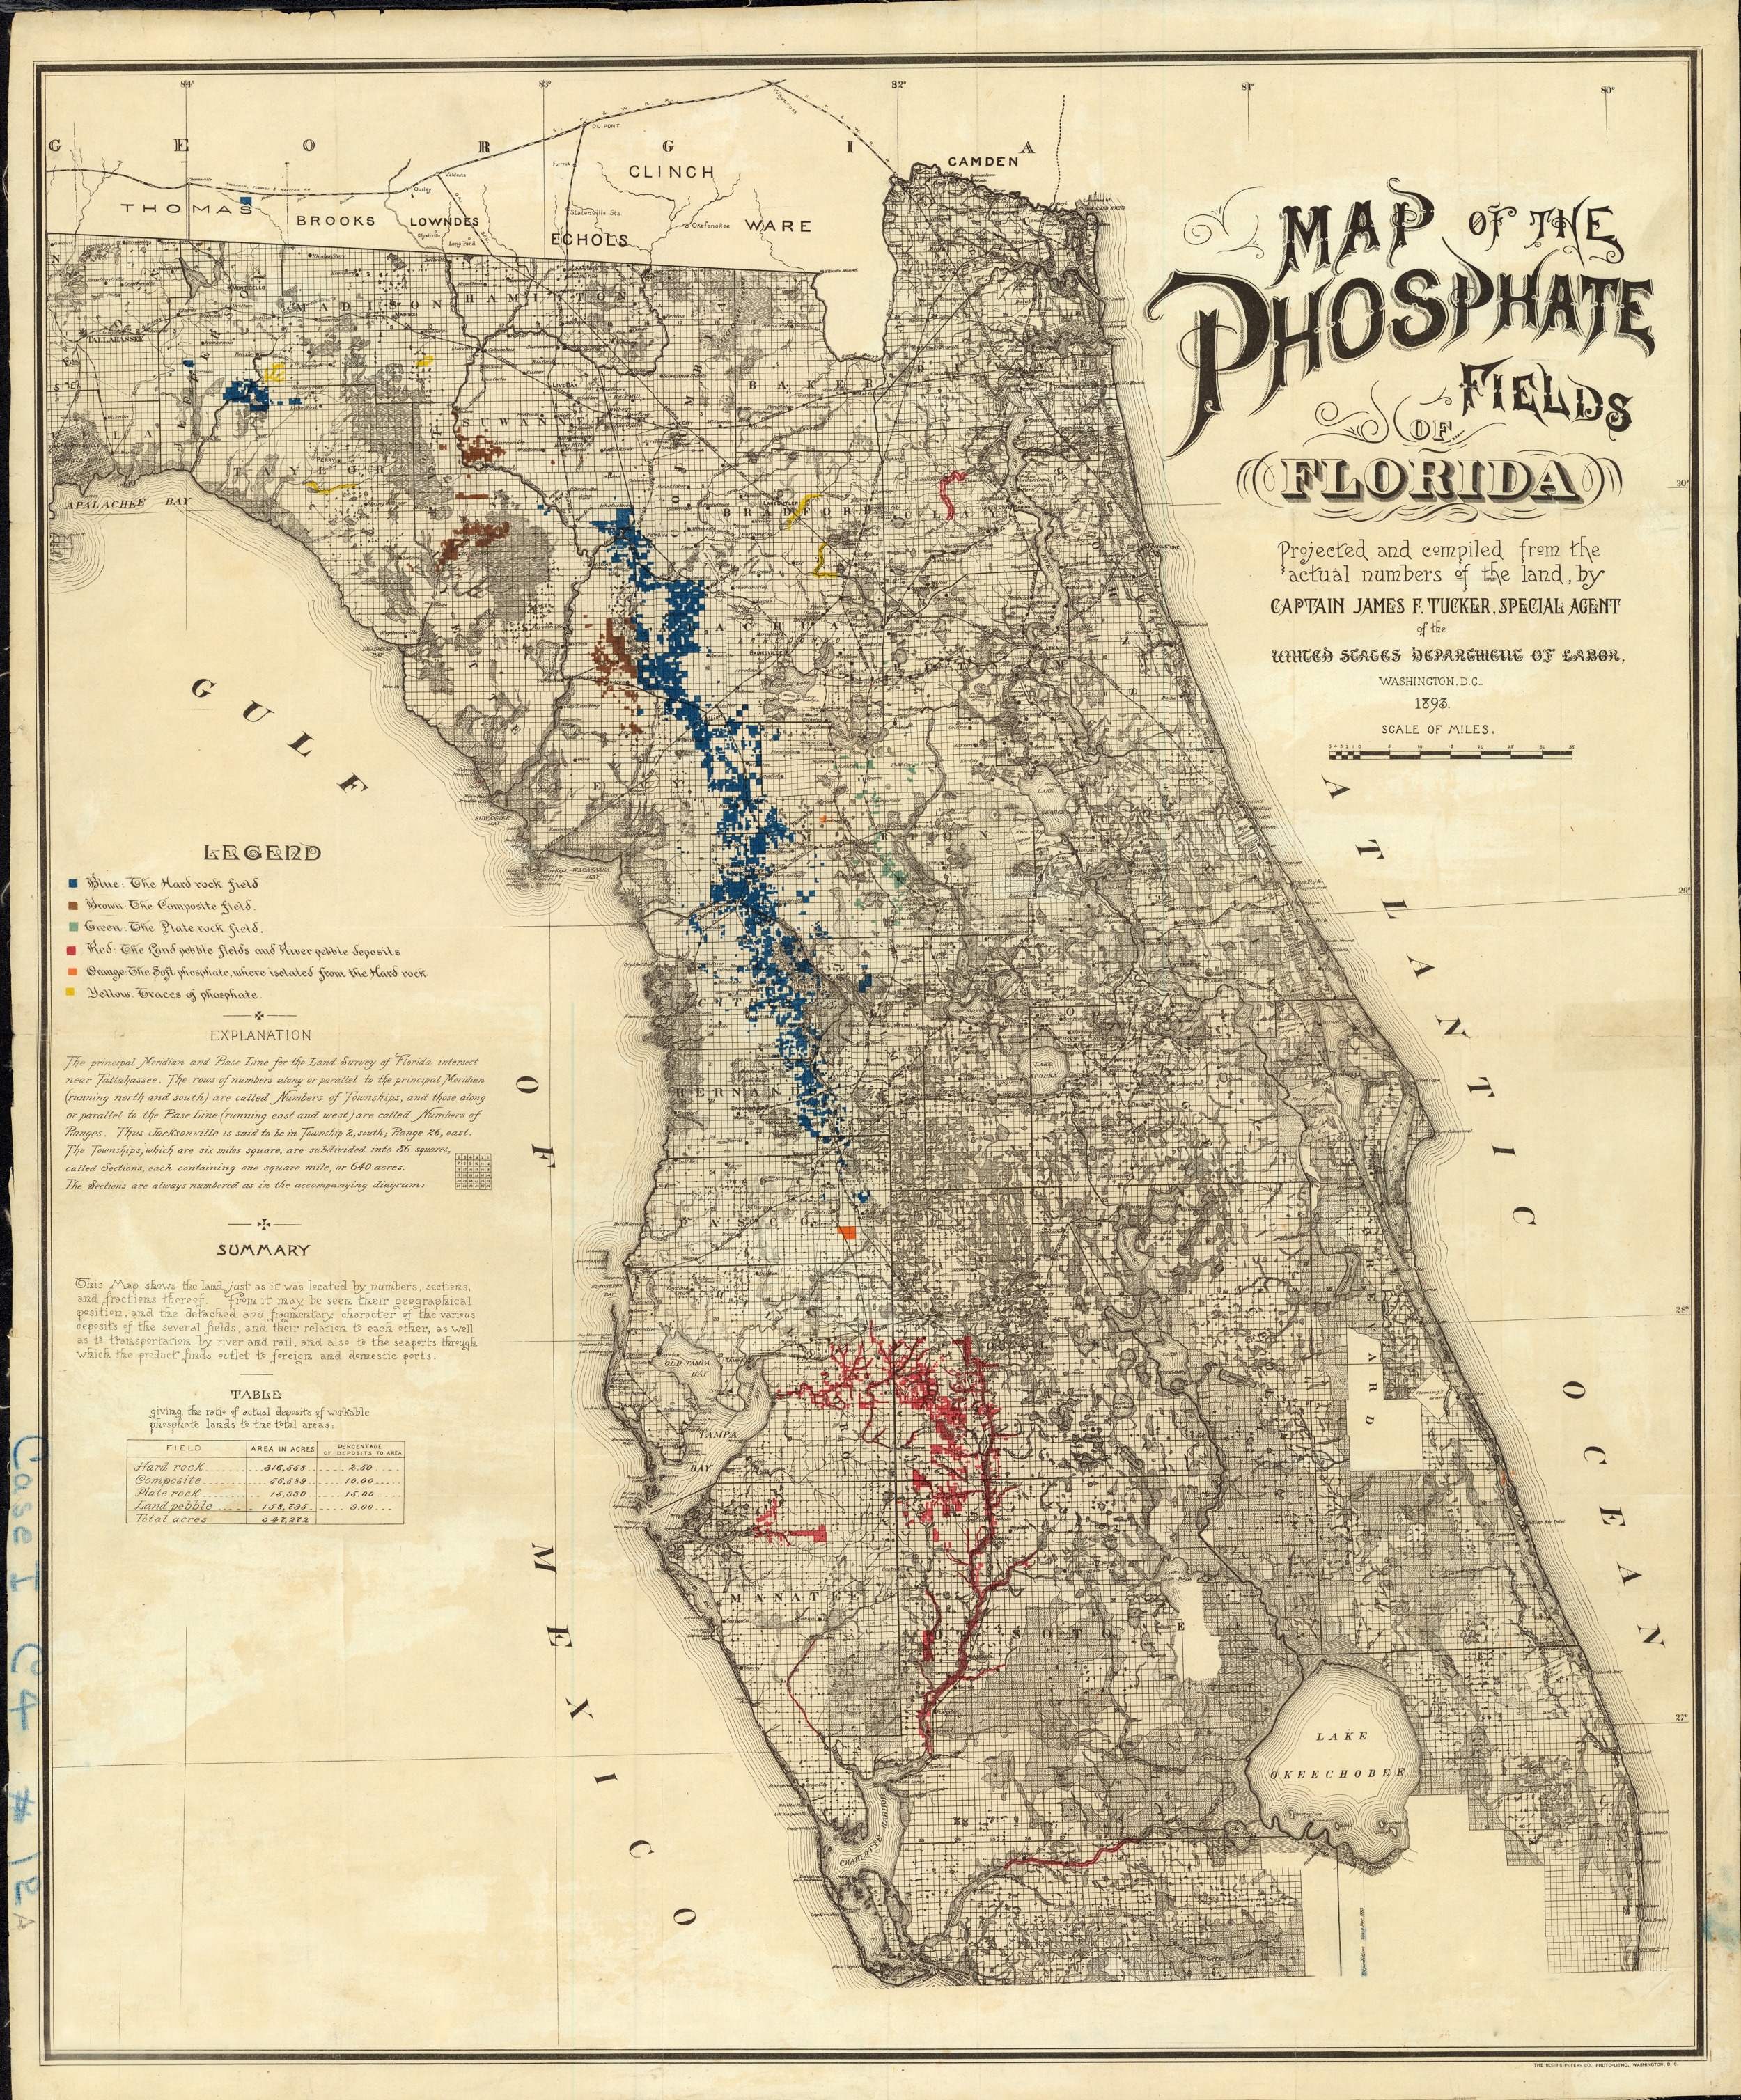 Phosphate Fields of Florida, 1893